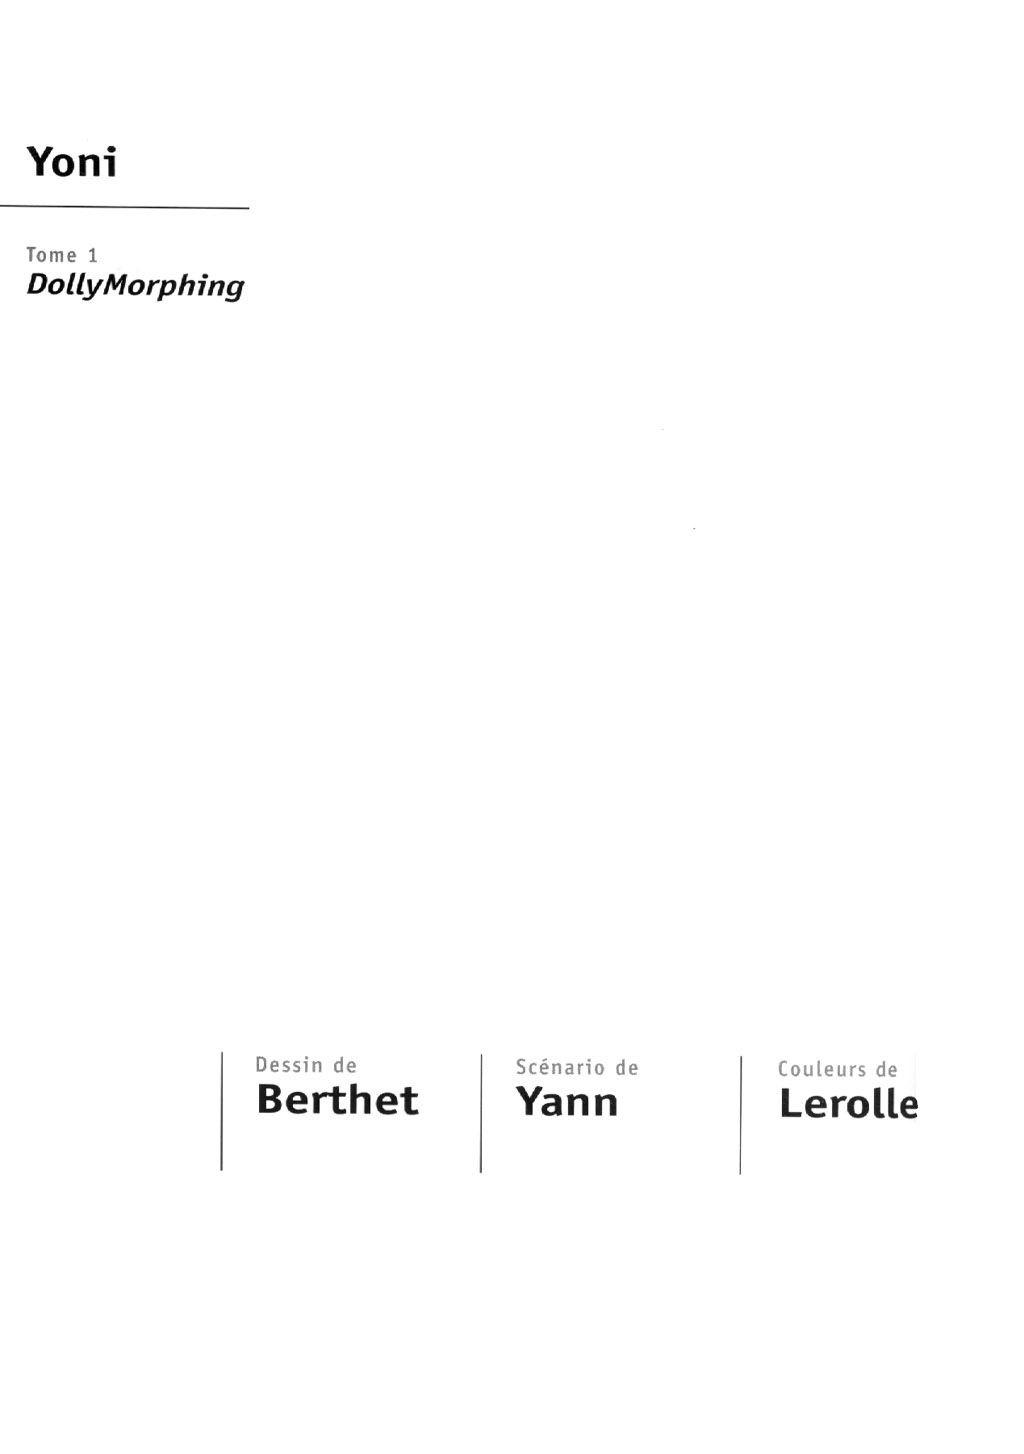 [Berthet - Yann] Yoni - tome 1 - Dollymorphing 2